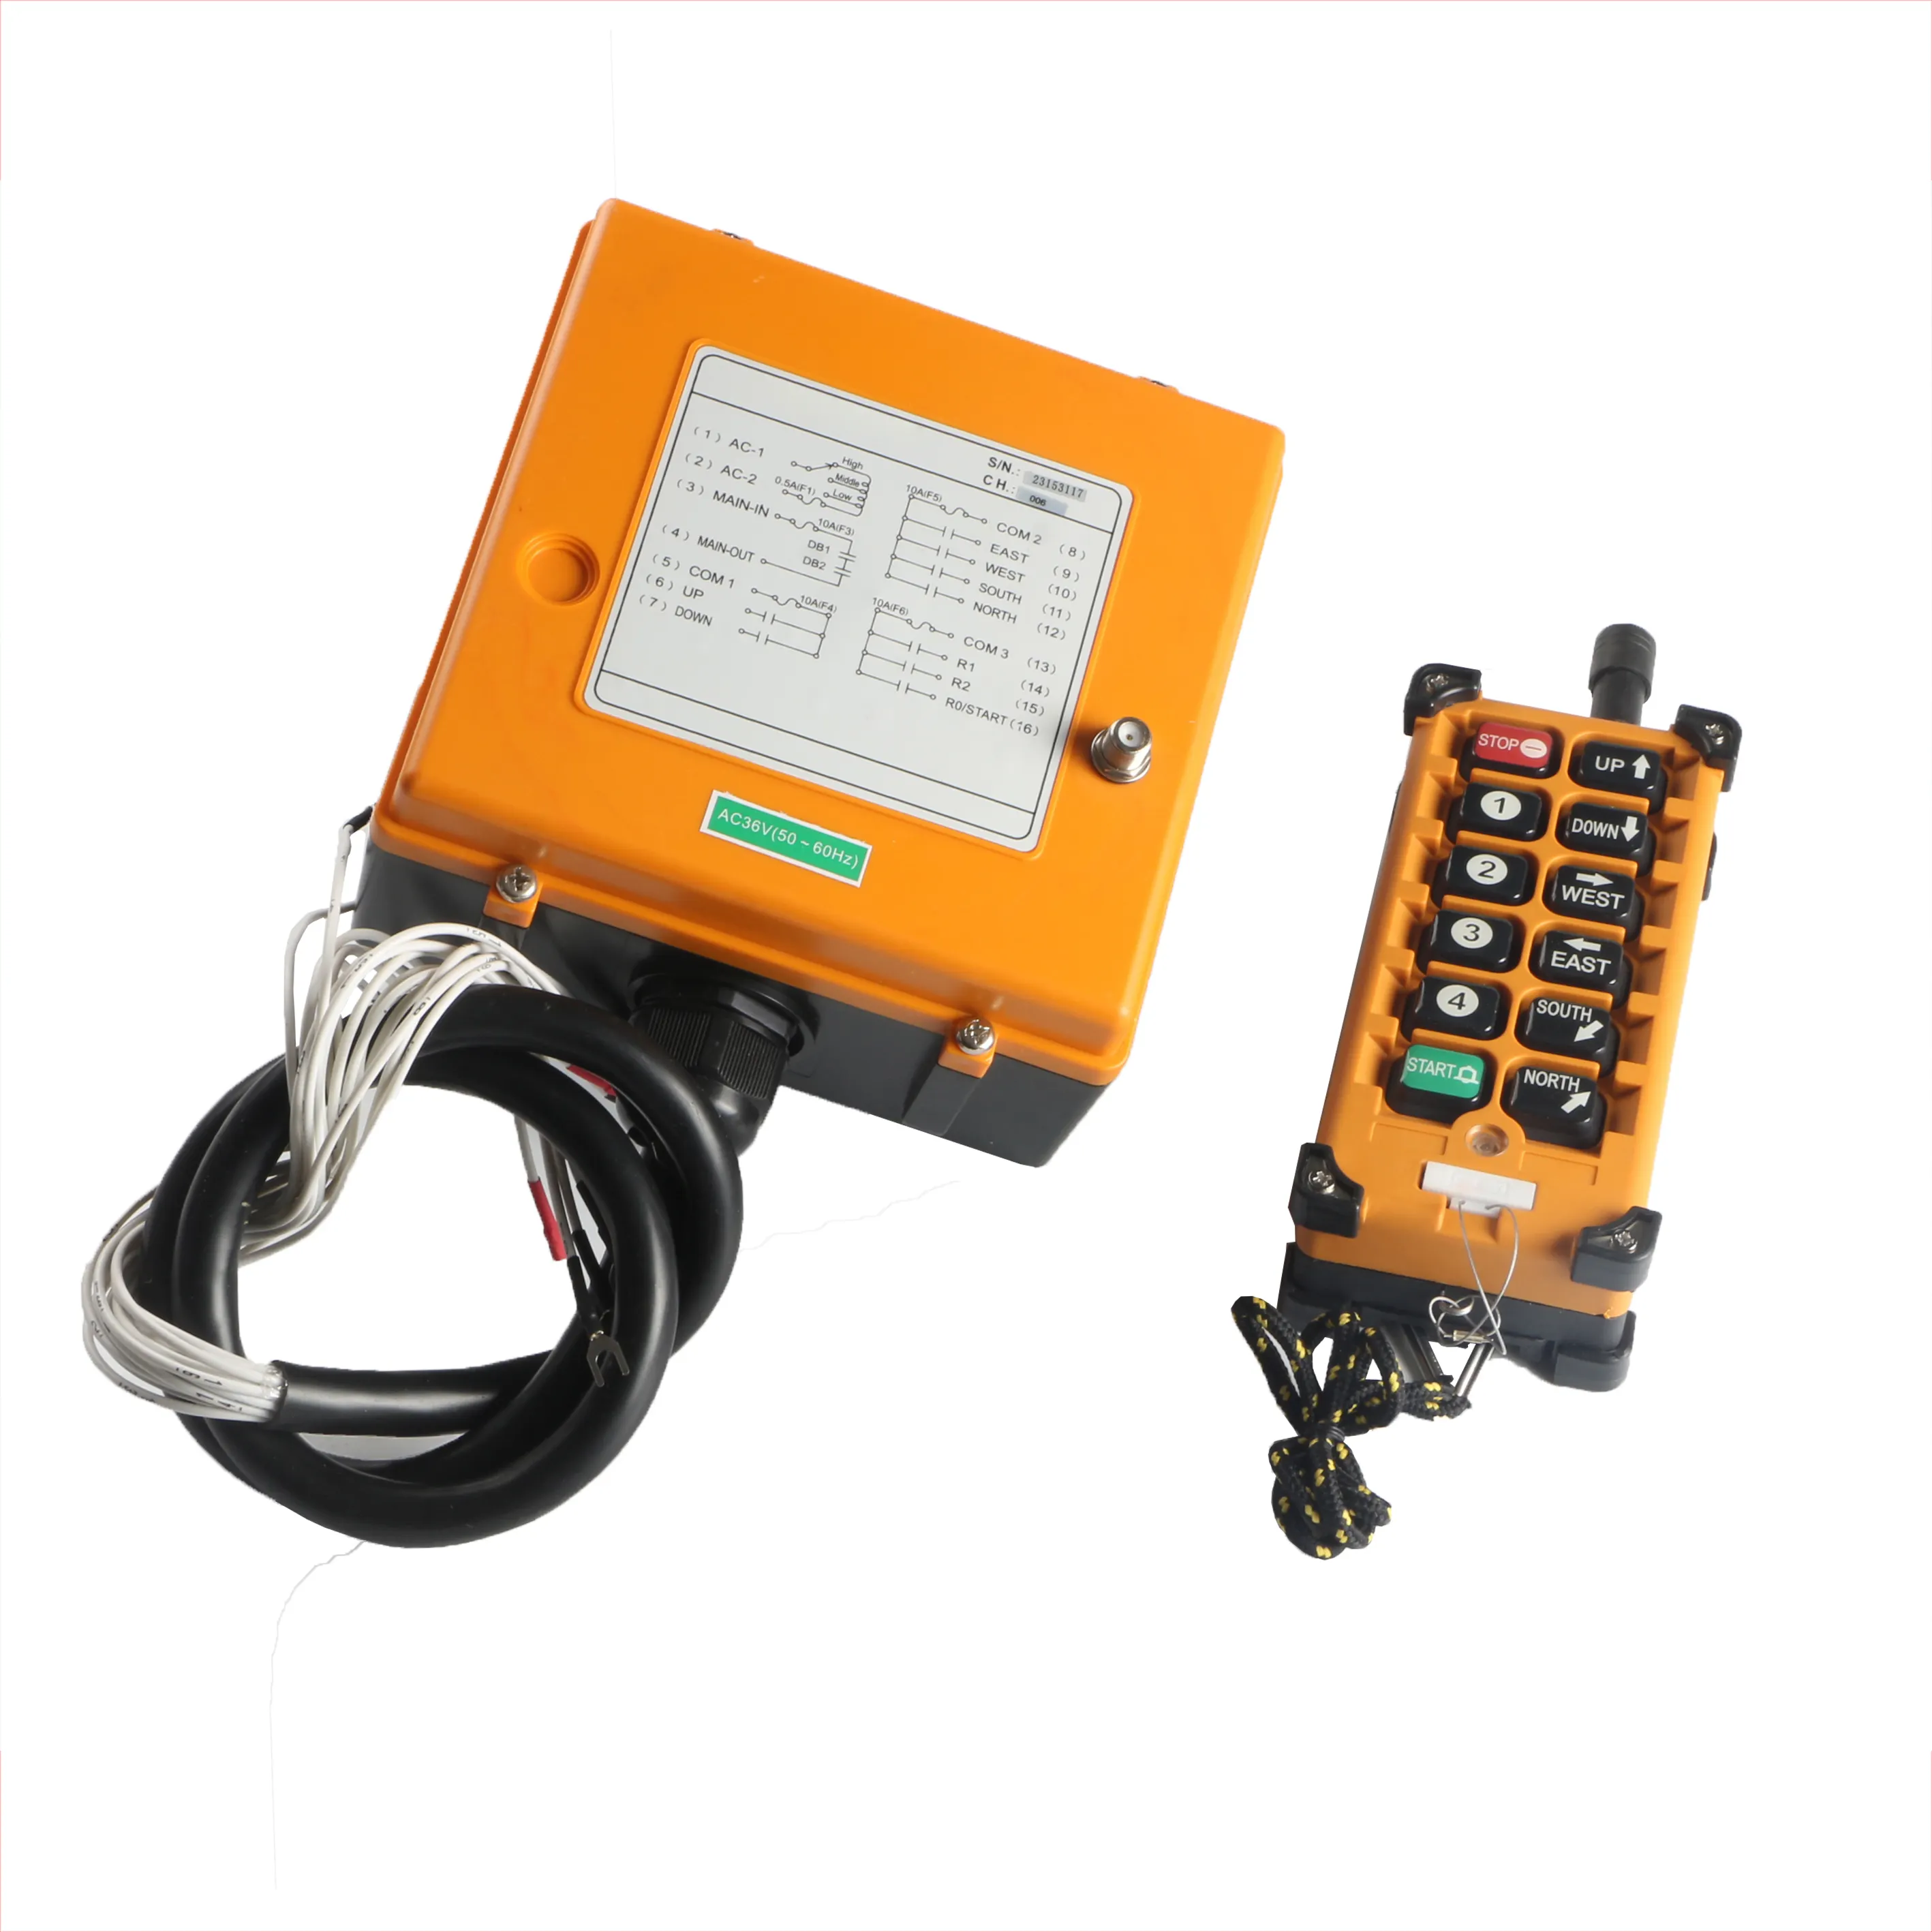 Iehc-mando a distancia inalámbrico para grúa, F23-A + +, resistente al agua, de una sola velocidad, industrial